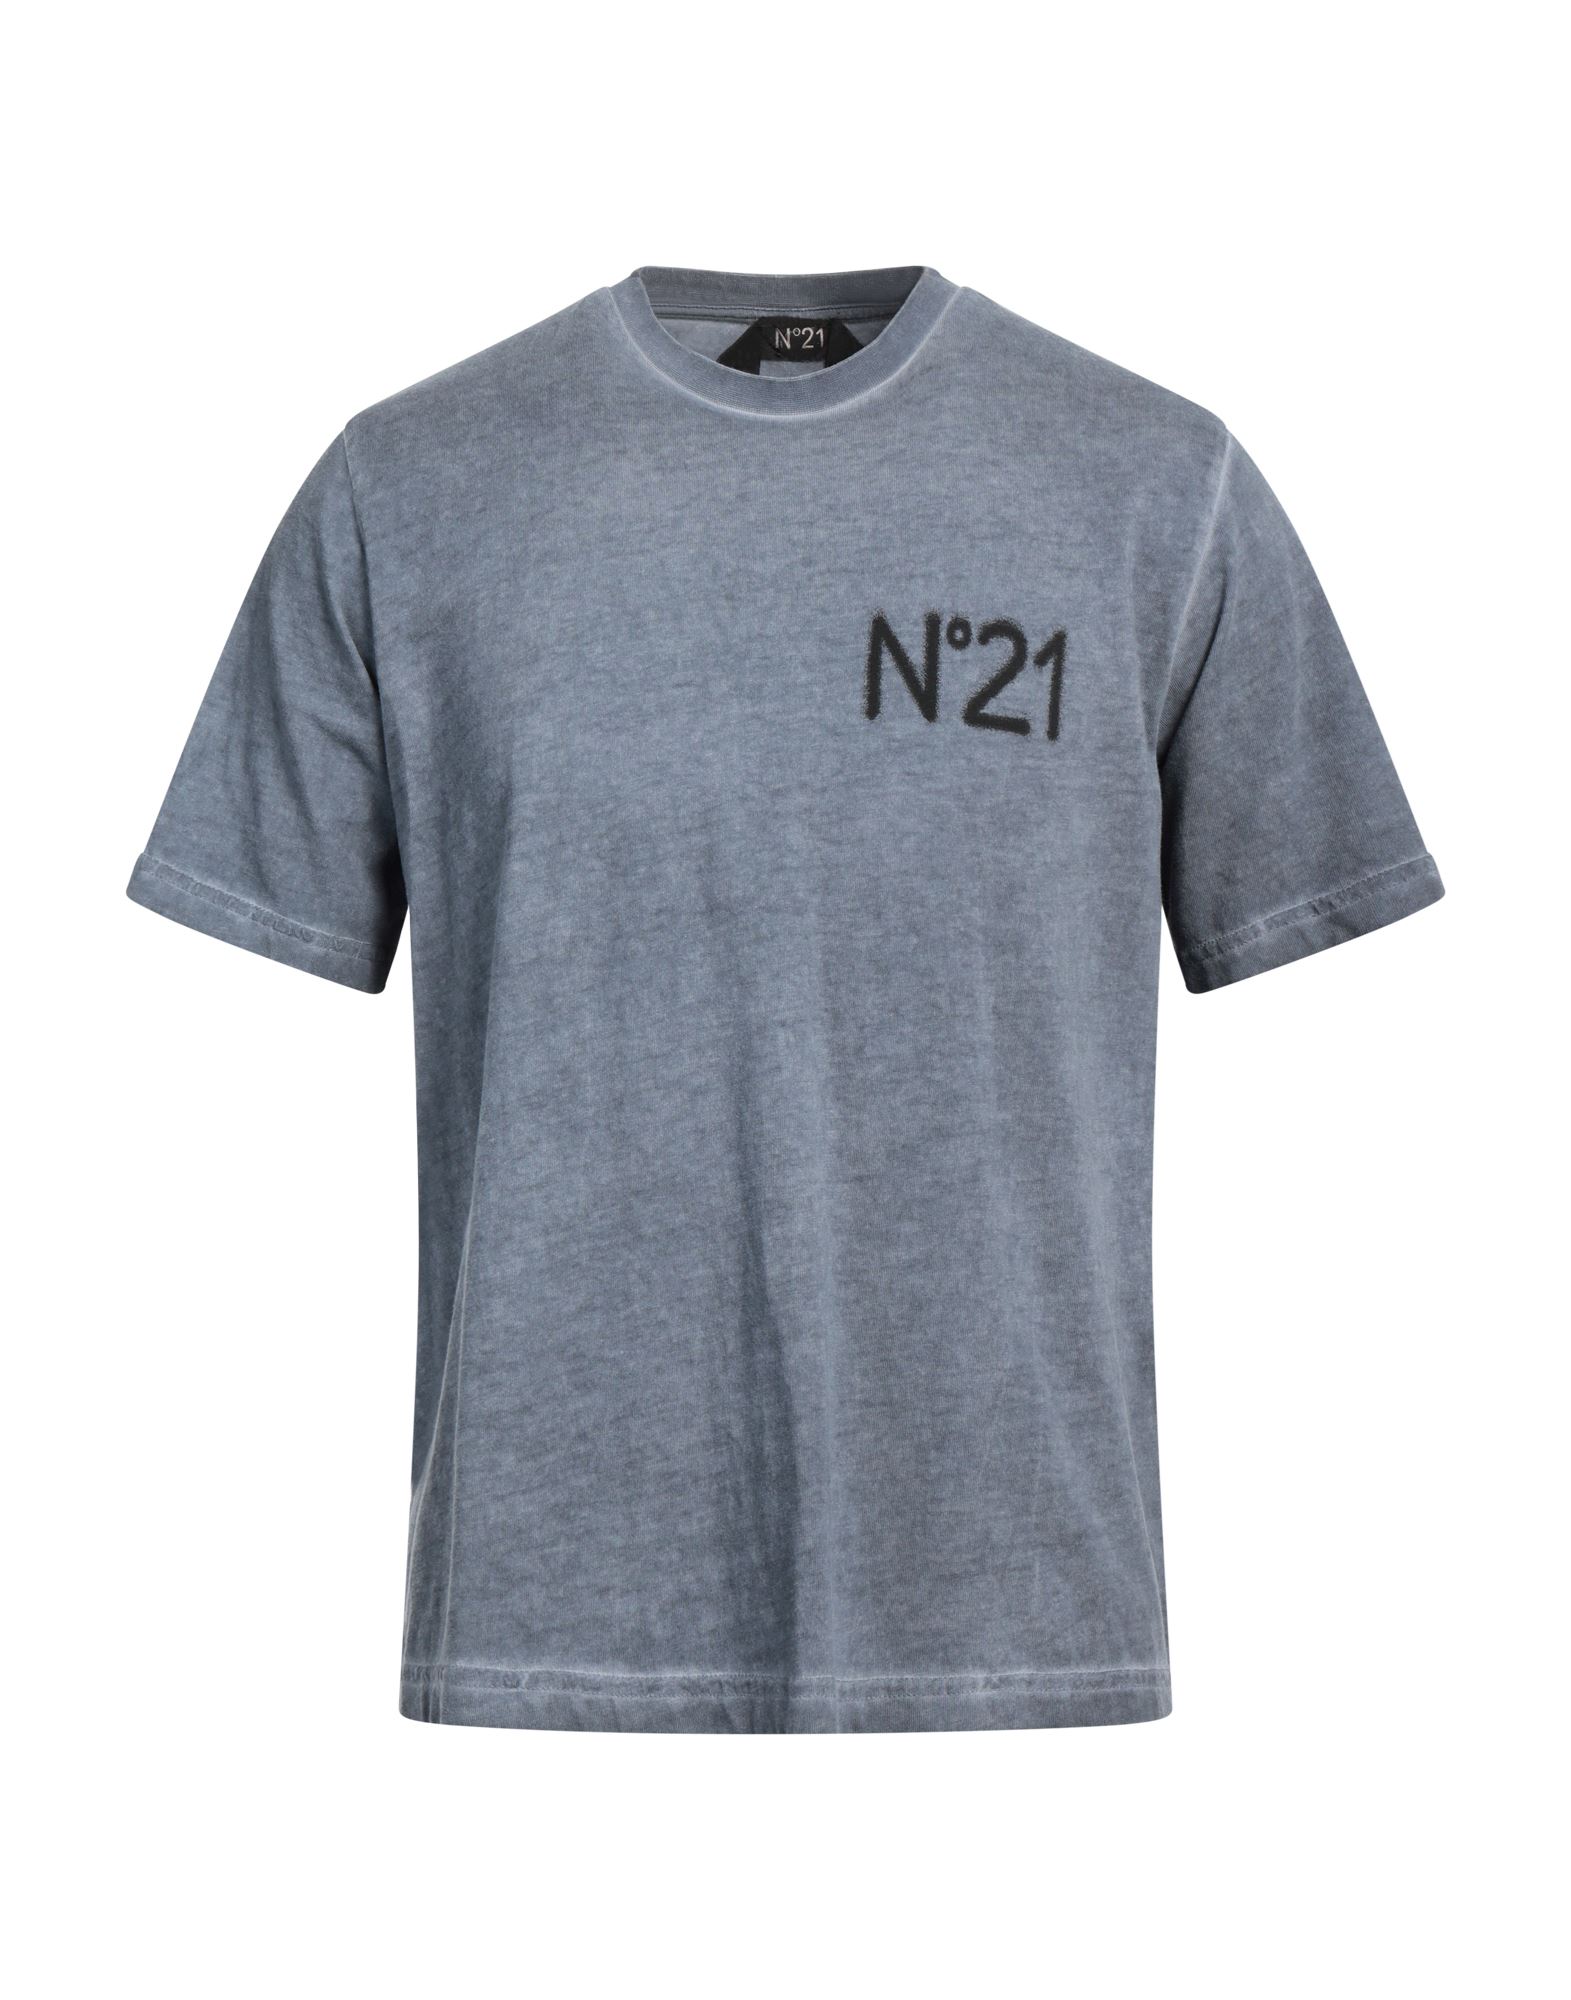 N°21 T-shirts Herren Taubenblau von N°21